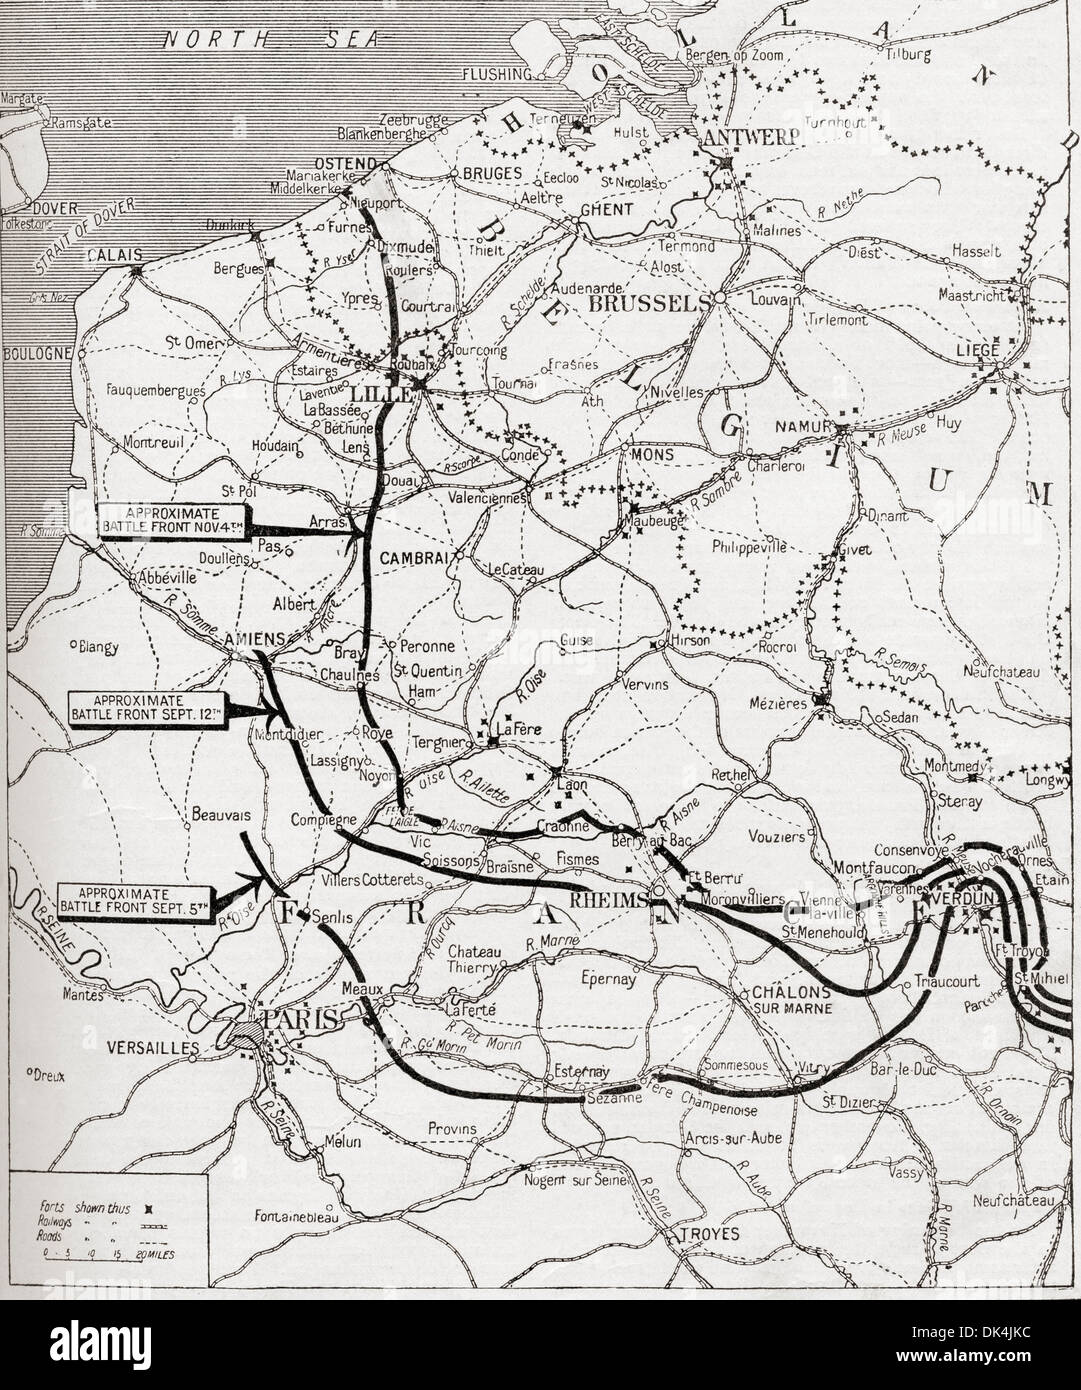 Karte zeigt die stetige Fortschritte des alliierten Vormarsches 1914 im ersten Weltkrieg. Aus dem Krieg illustrierte Album Deluxe veröffentlicht 1915. Stockfoto